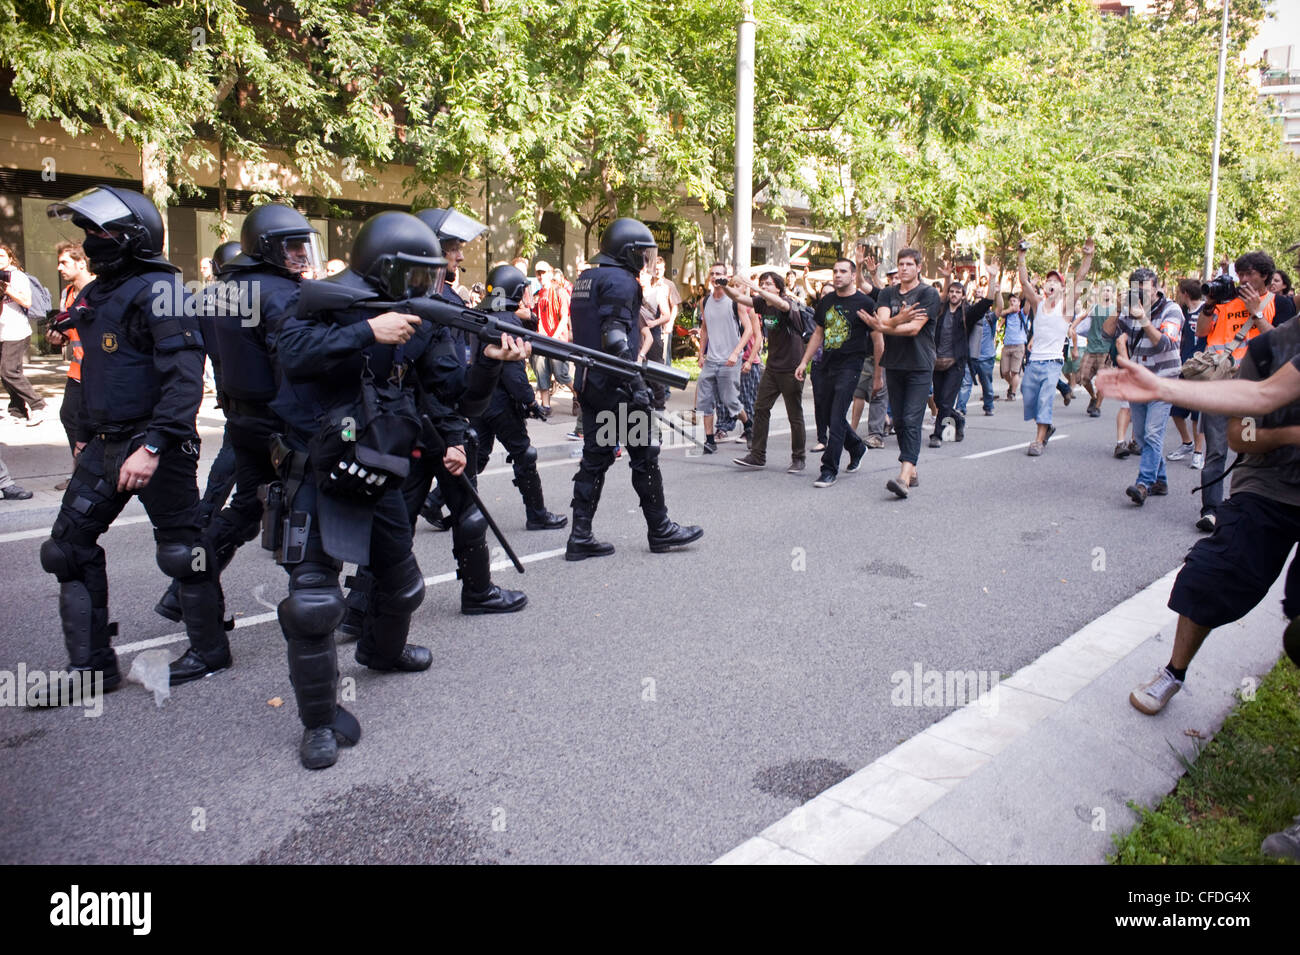 Protestation des indignés (révolution espagnole) et d'affrontements avec la police à Barcelone près du Parlement catalan, Parc Ciutadella Banque D'Images